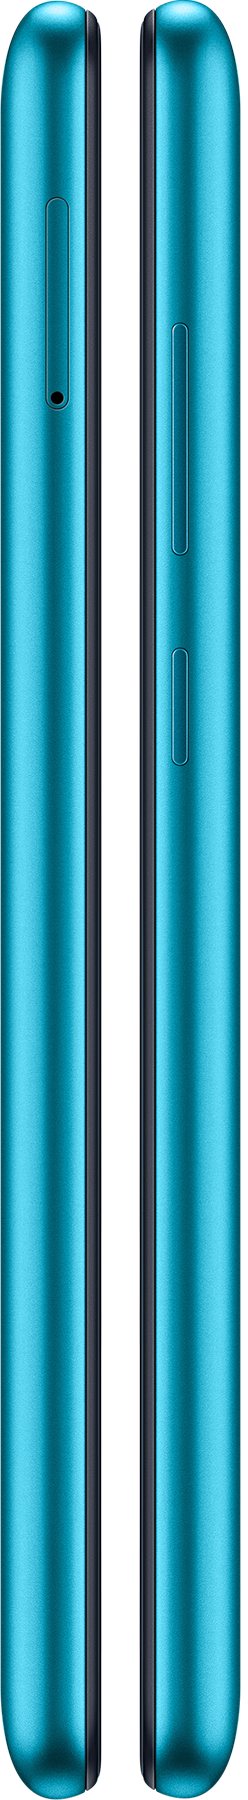 Samsung Galaxy M11 SM-M115F 32GB